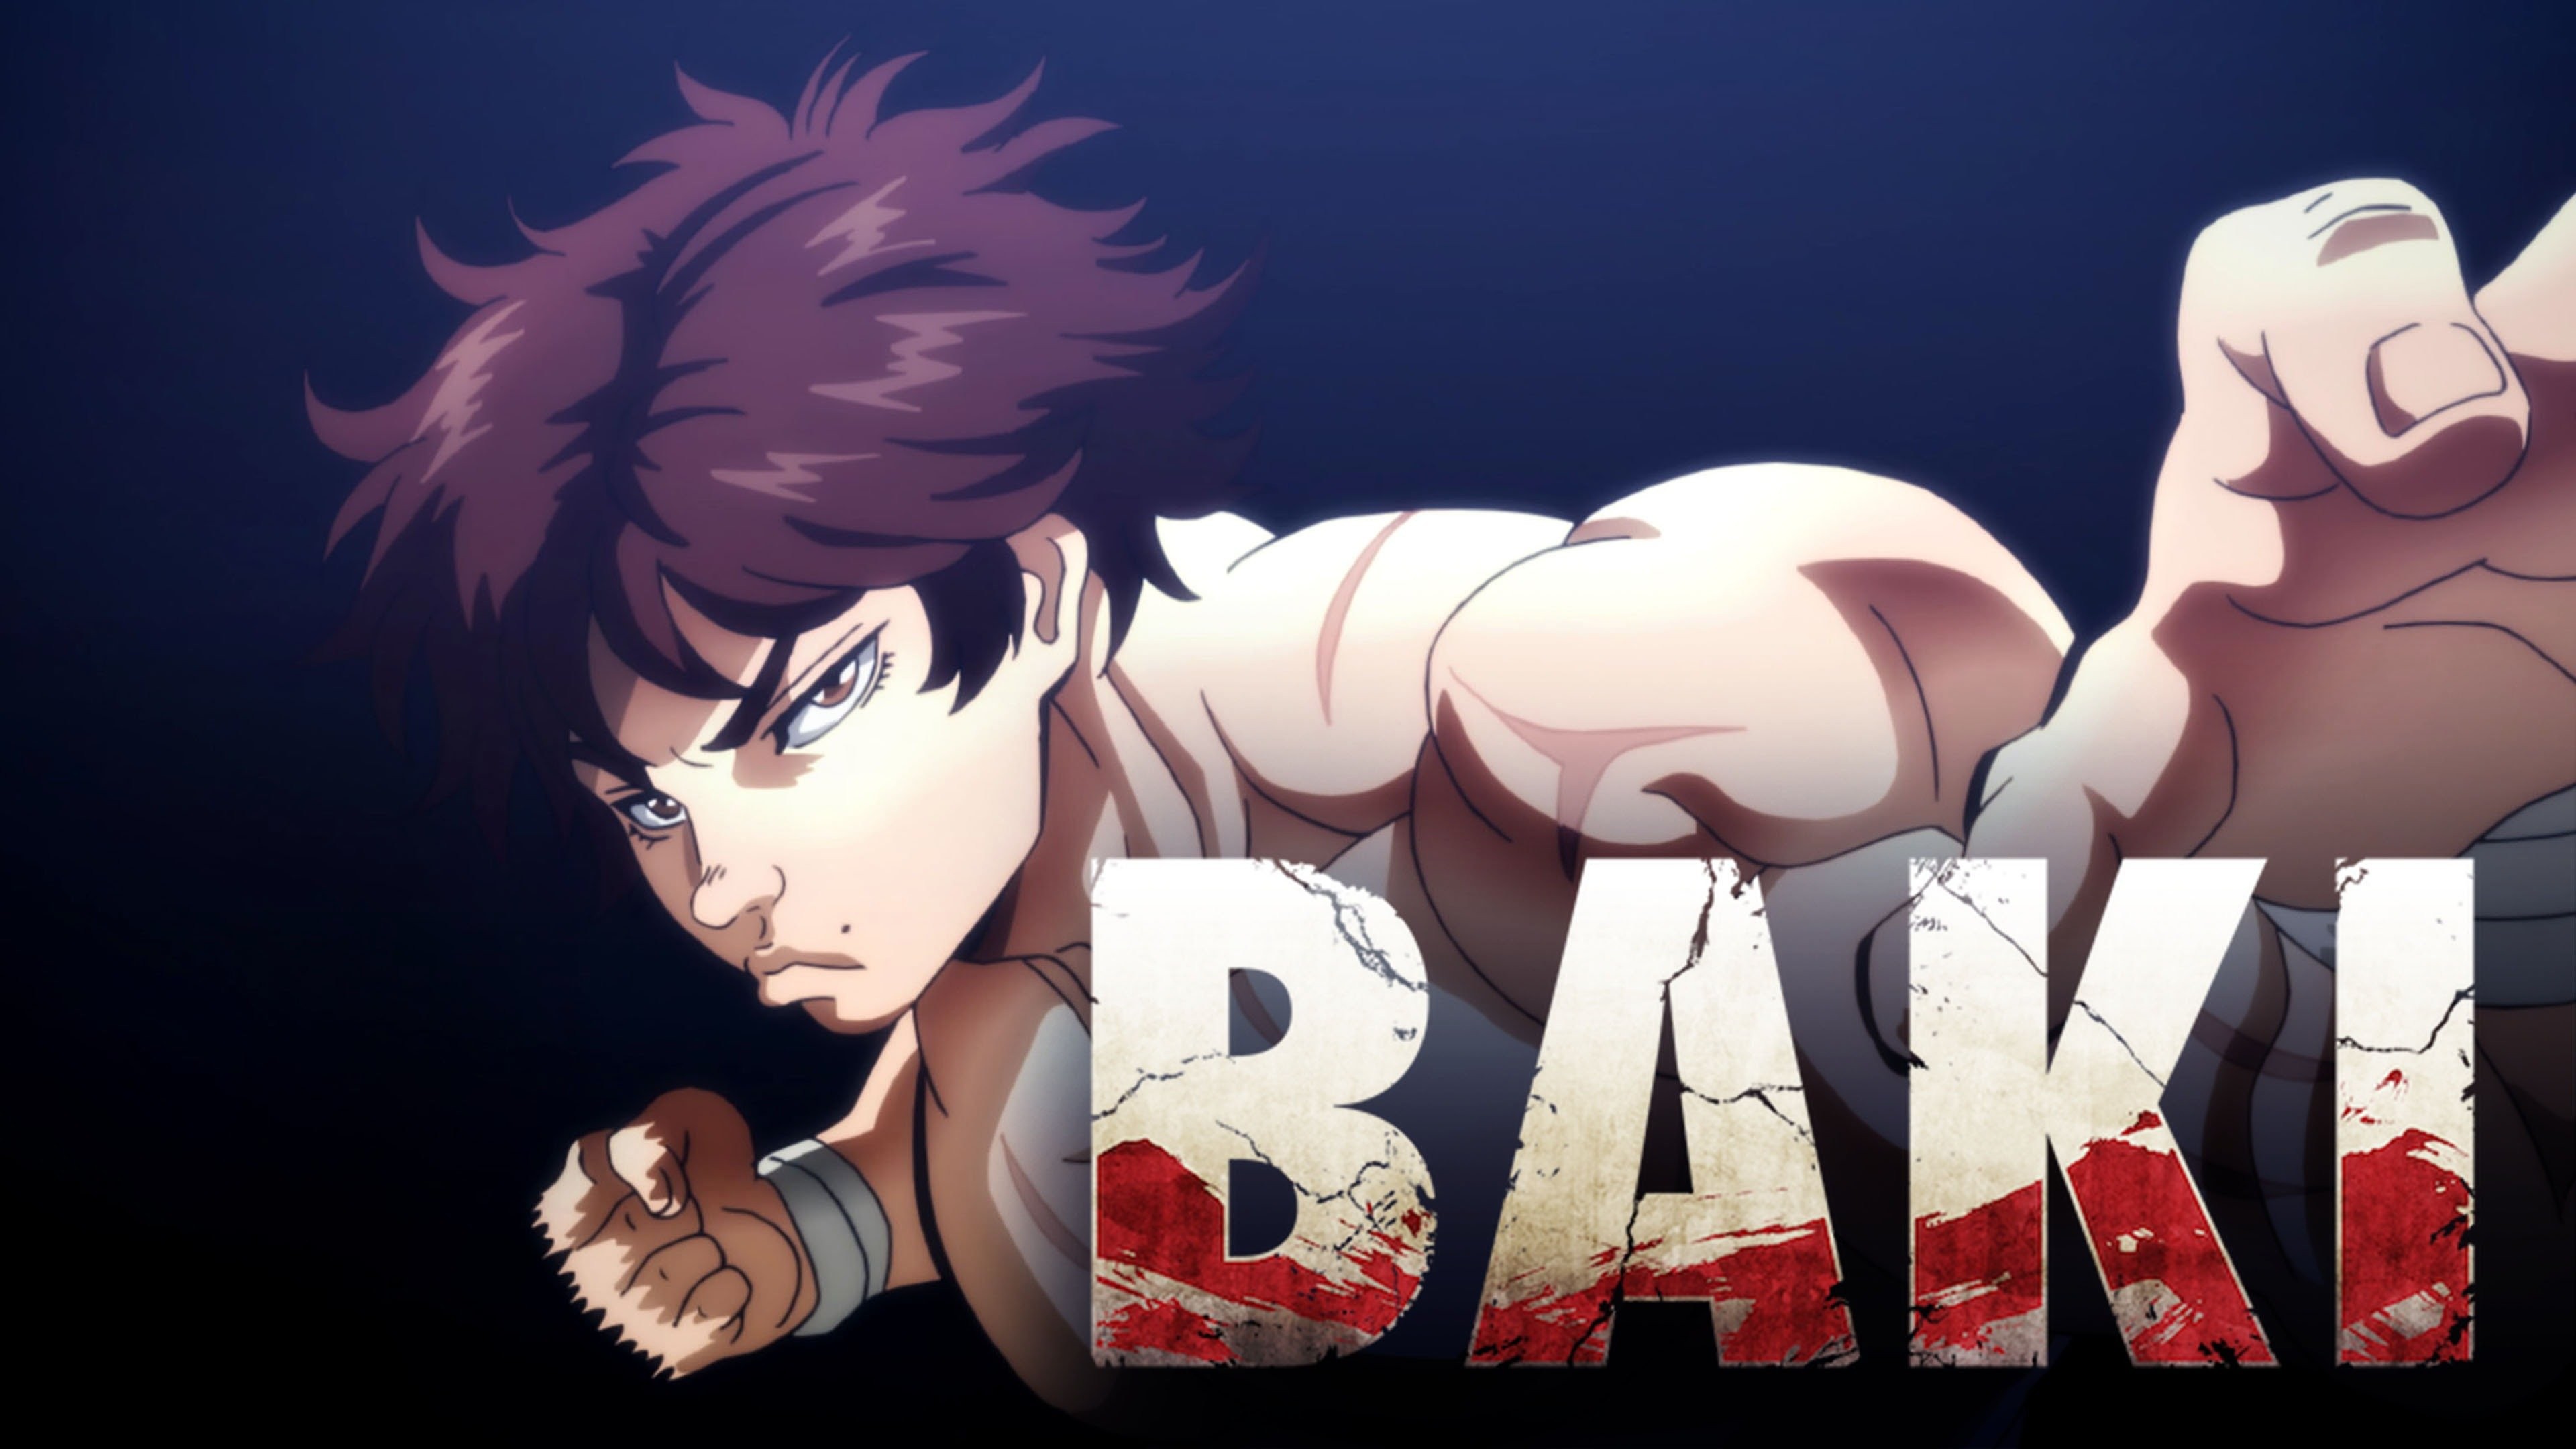 BAKI - O CAMPEÃO  Trailer Oficial da série anime Netflix 